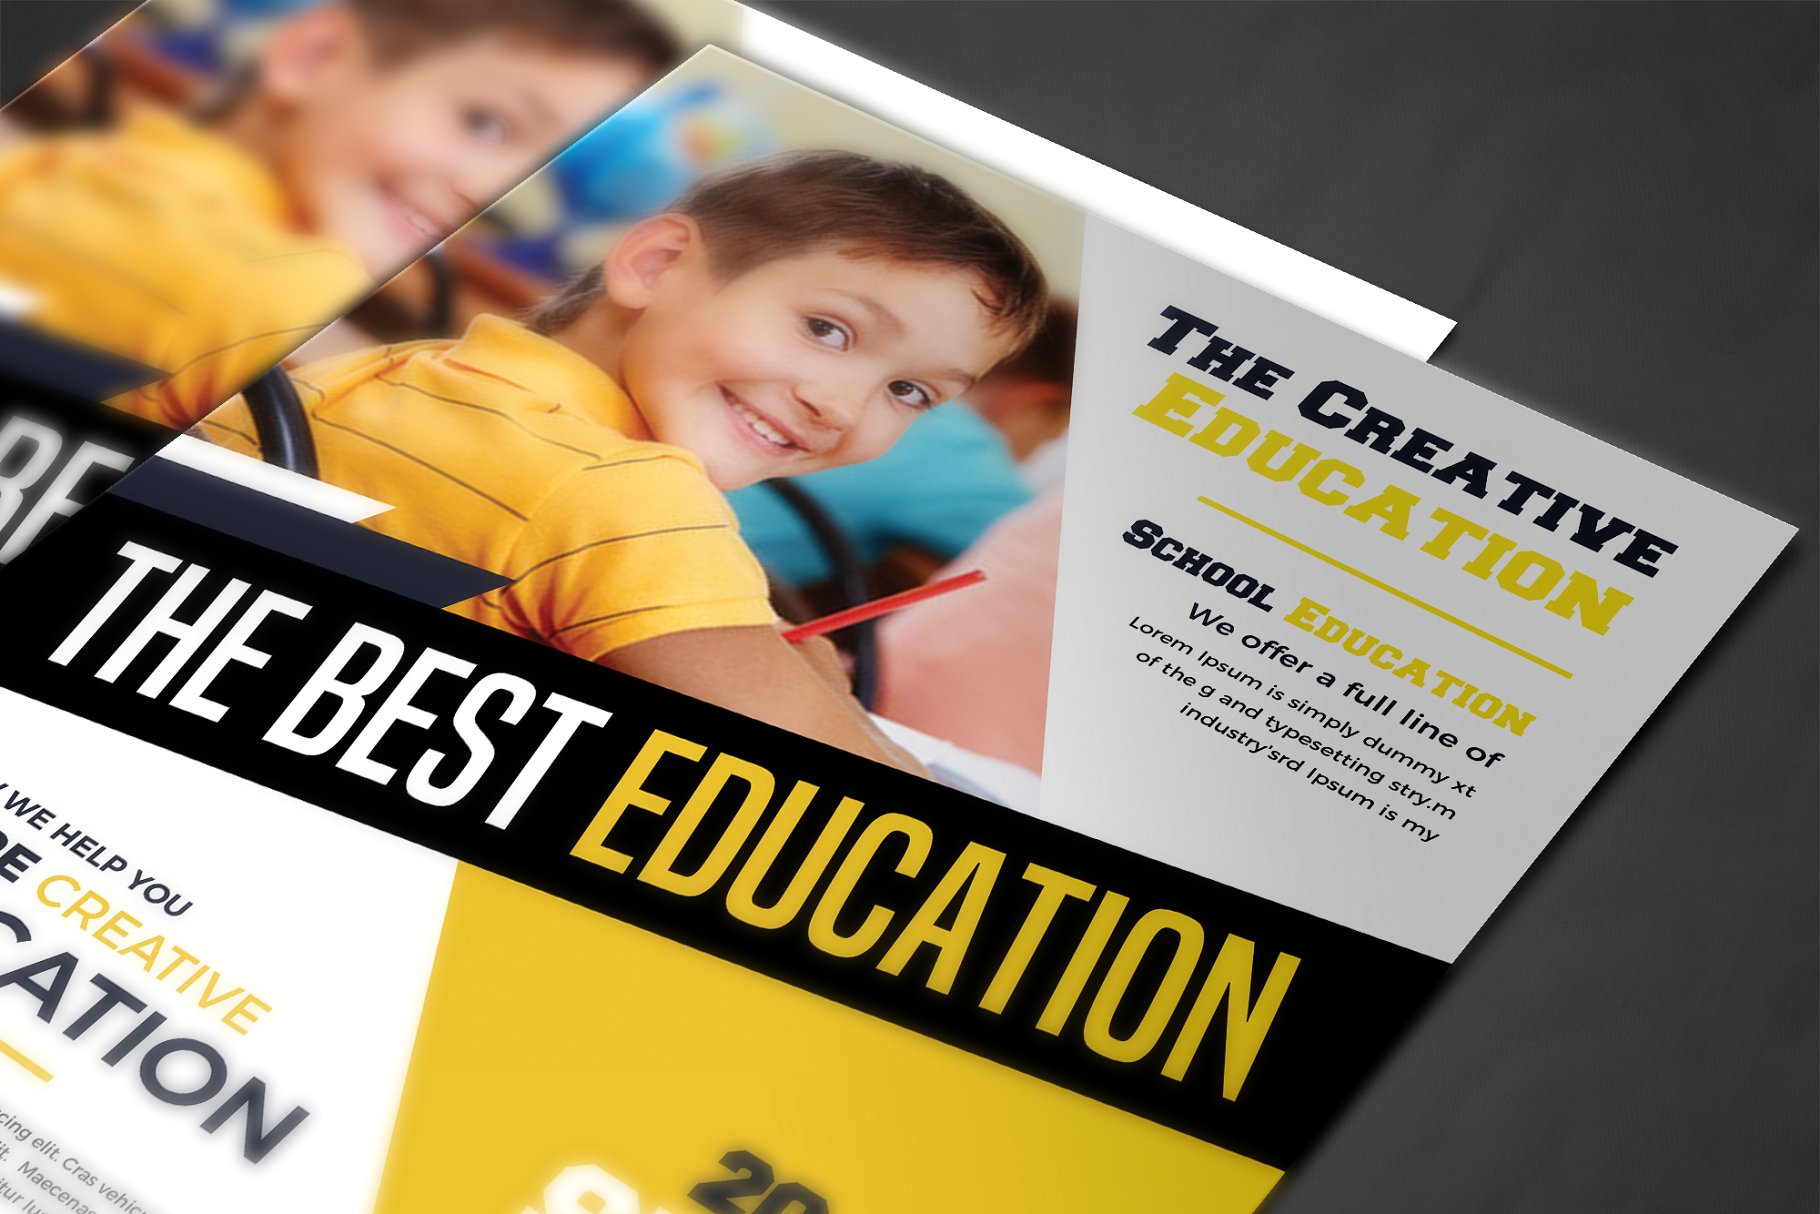 校园教育主题海报设计模板 School Education Flyer Templates插图(3)